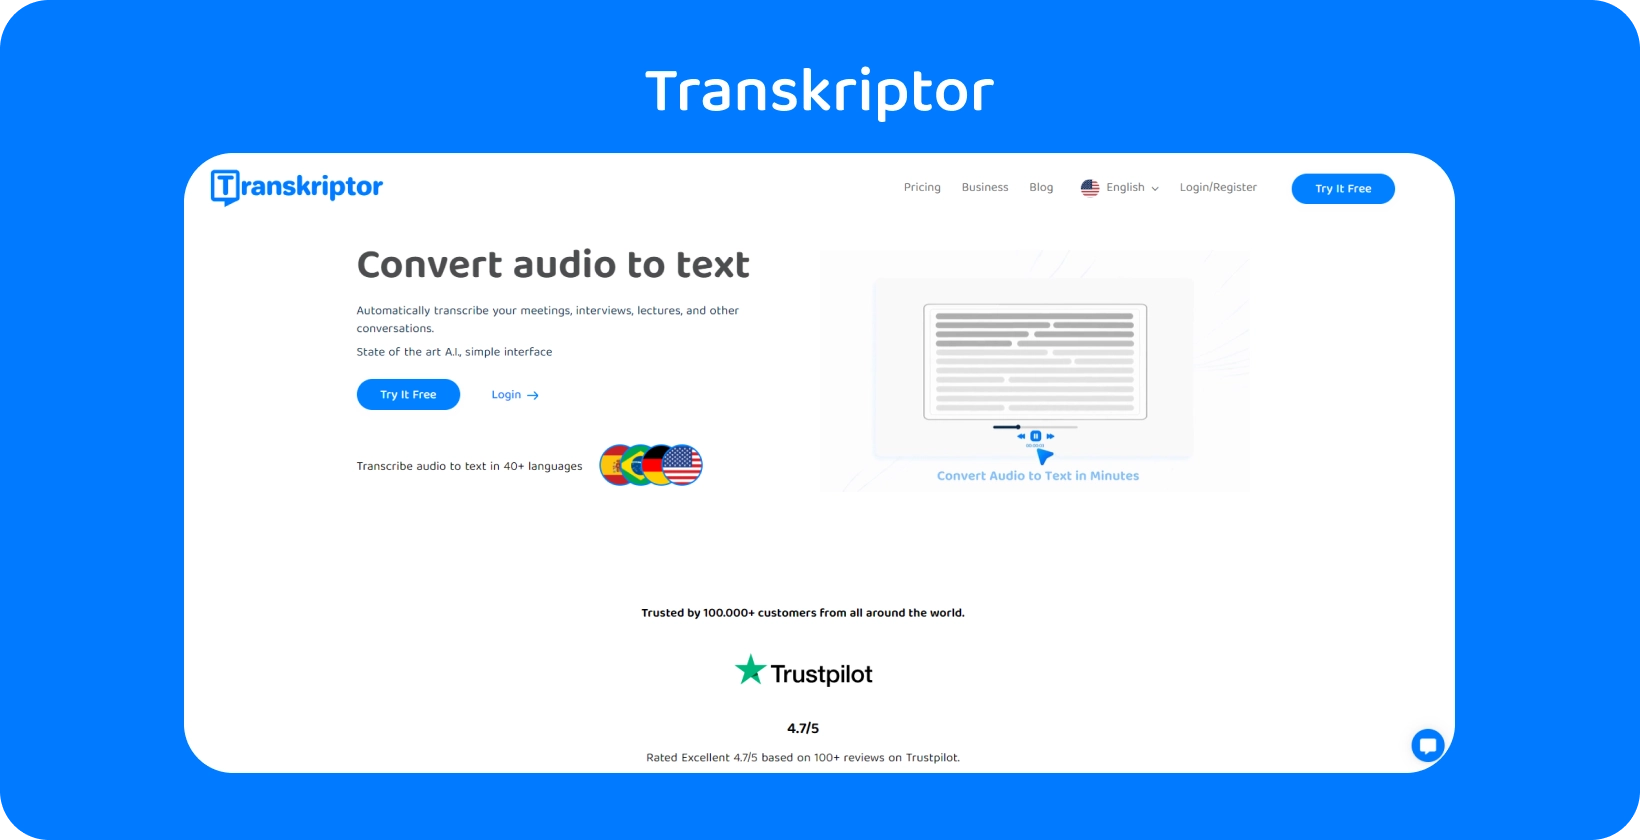 L'interfaccia di Transkriptor mostra la funzione di assistente alle riunioni, semplificando la trascrizione della ricerca qualitativa.